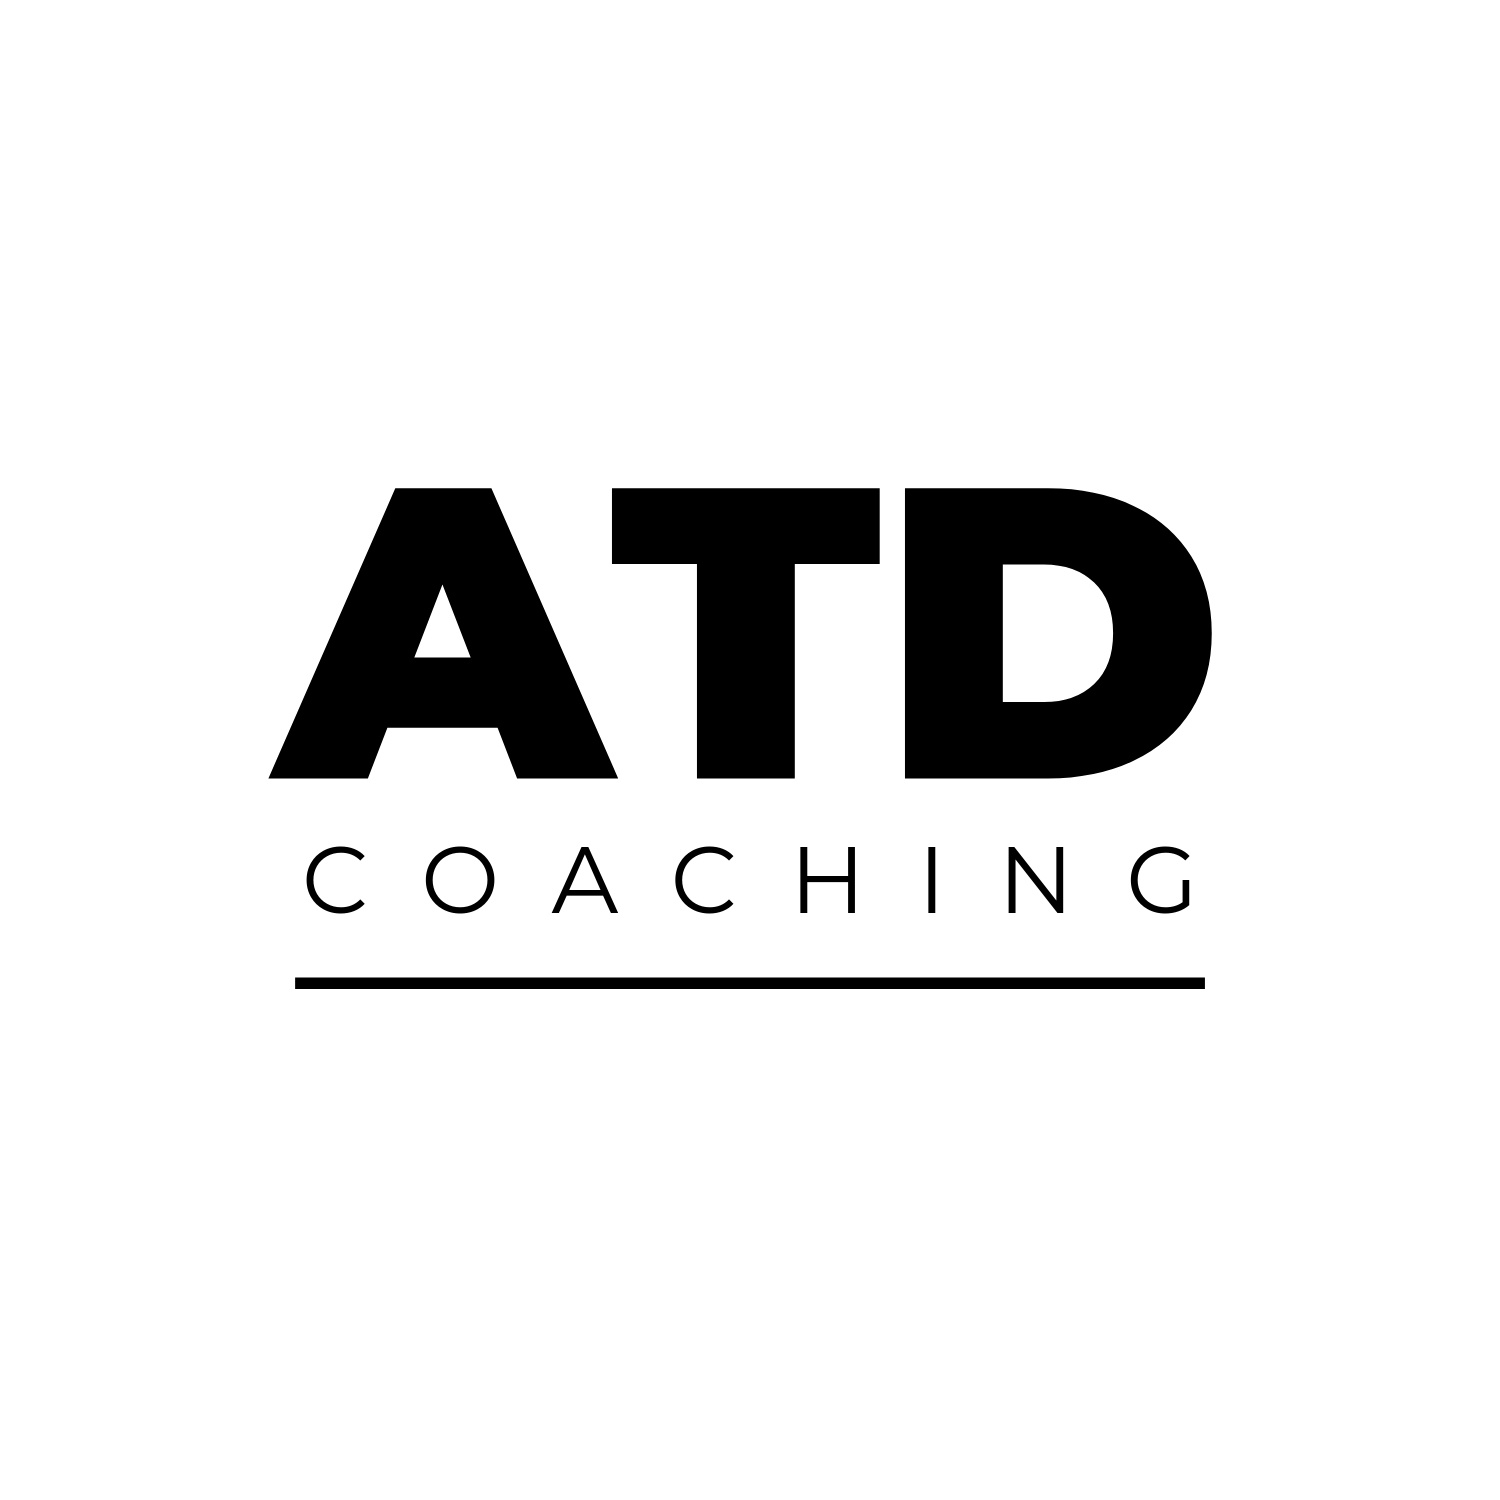 ATD Coaching